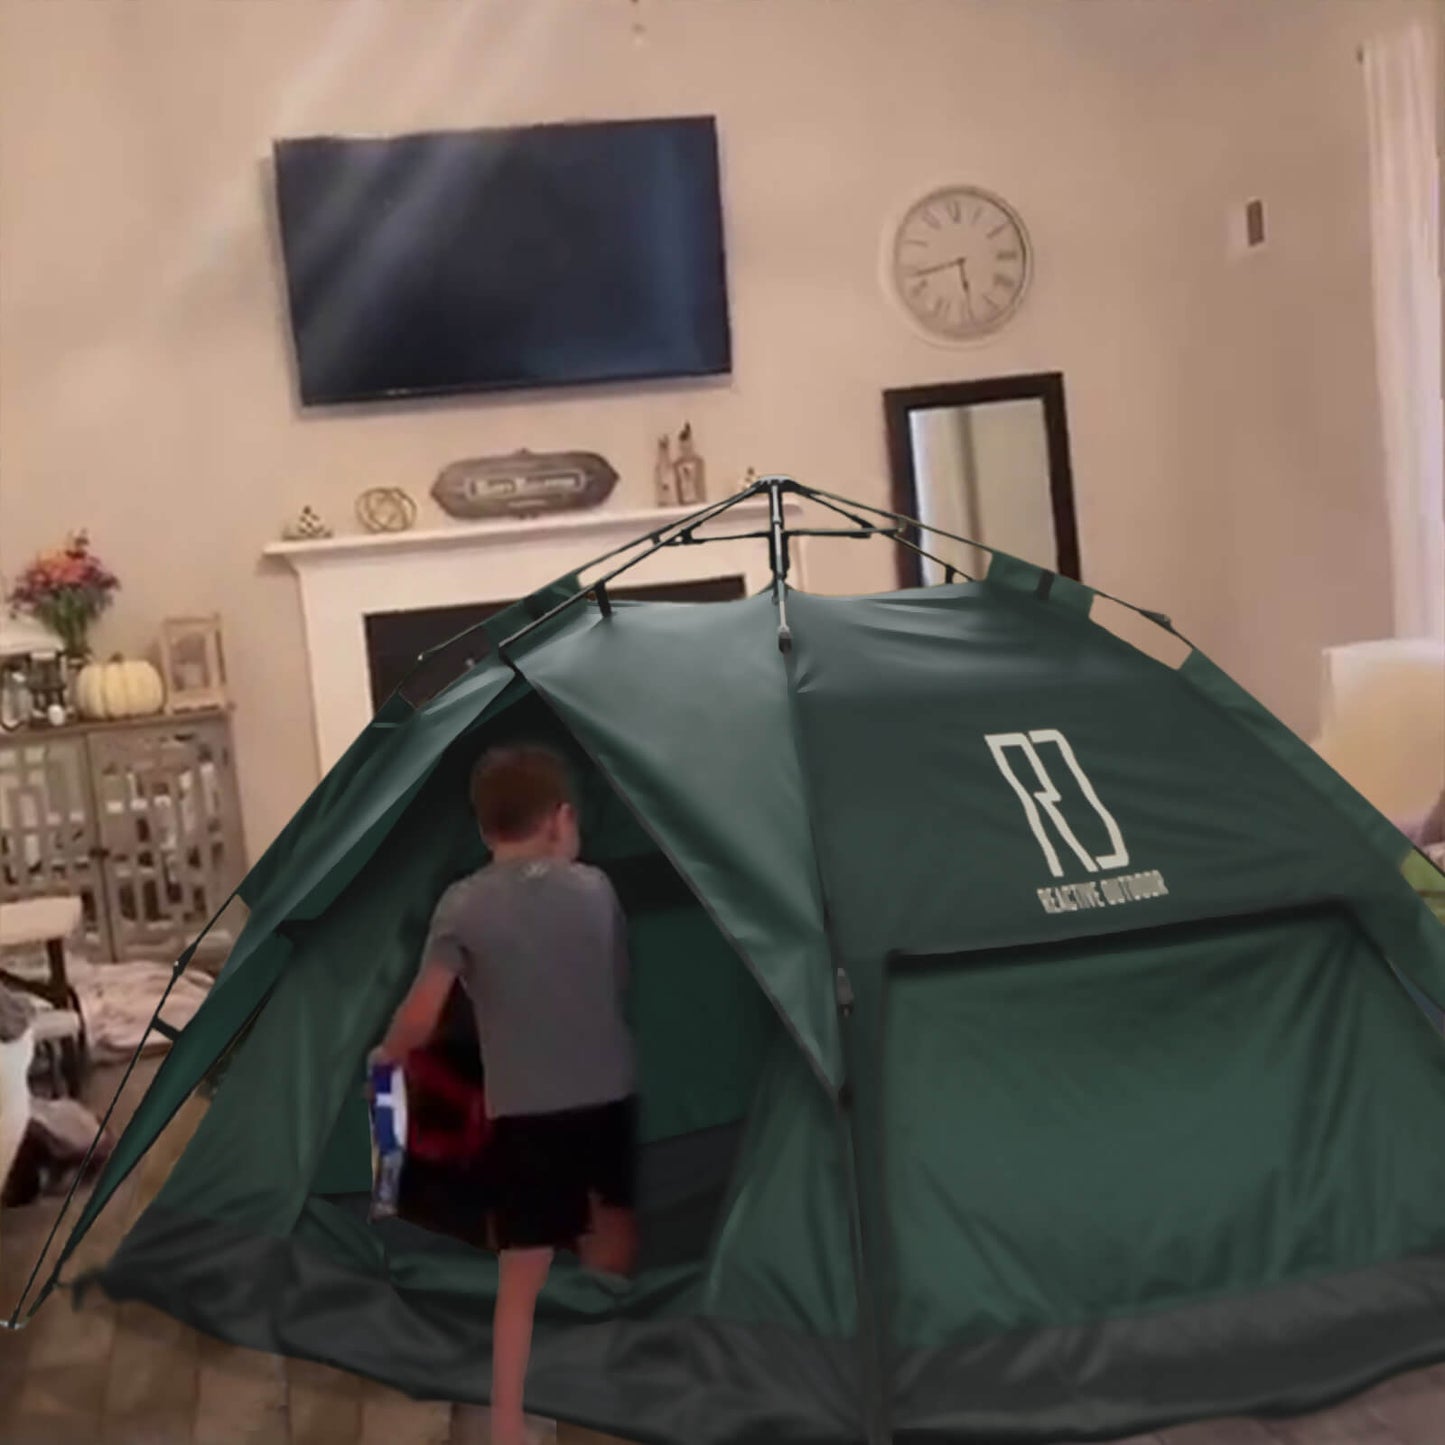 1 pieni + 1 suuri 3 sekunnin teltta (perhepakkaus)